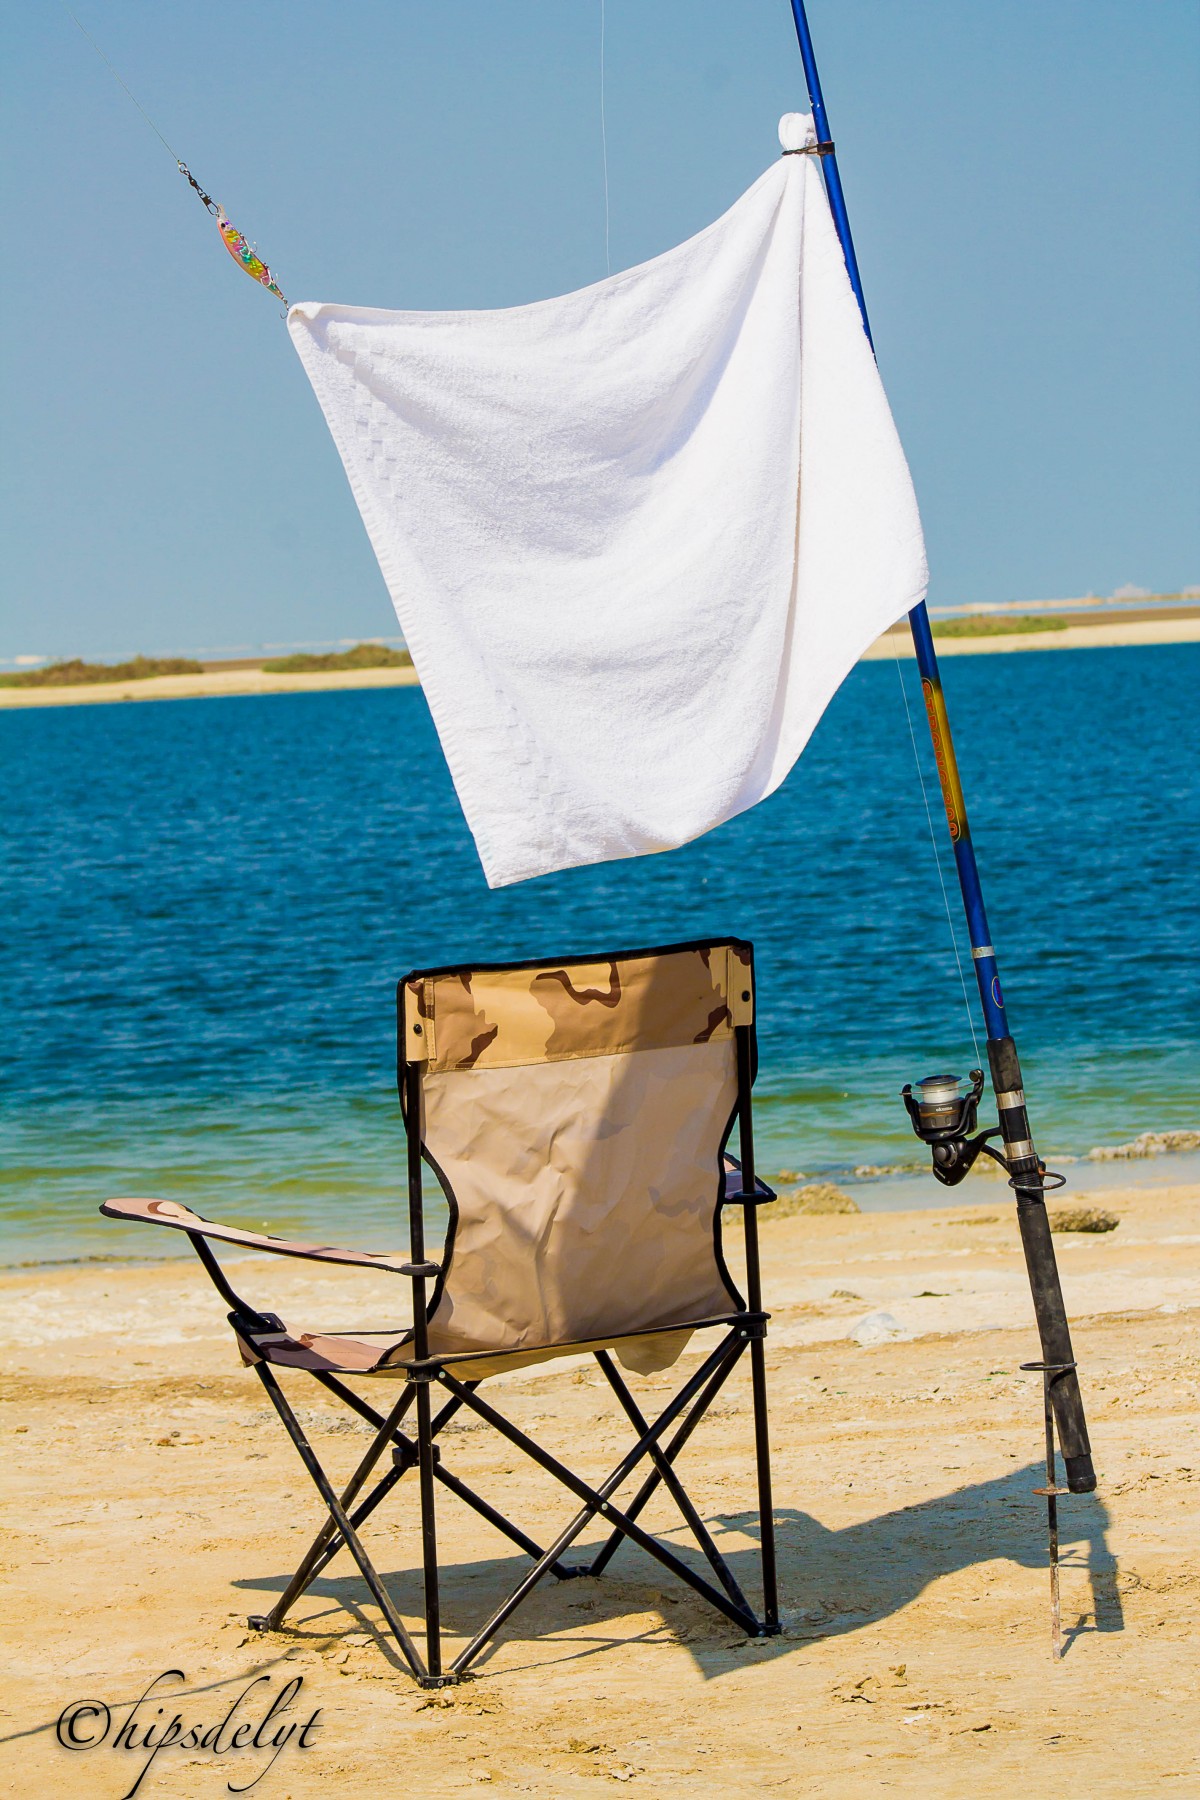 شاطئ chipsdelyt التصوير عطلة الصيف شور البحر الظل الترفيه الرمال للطي كرسي الأثاث كرسي في الهواء الطلق المحيط ساحل السياحة